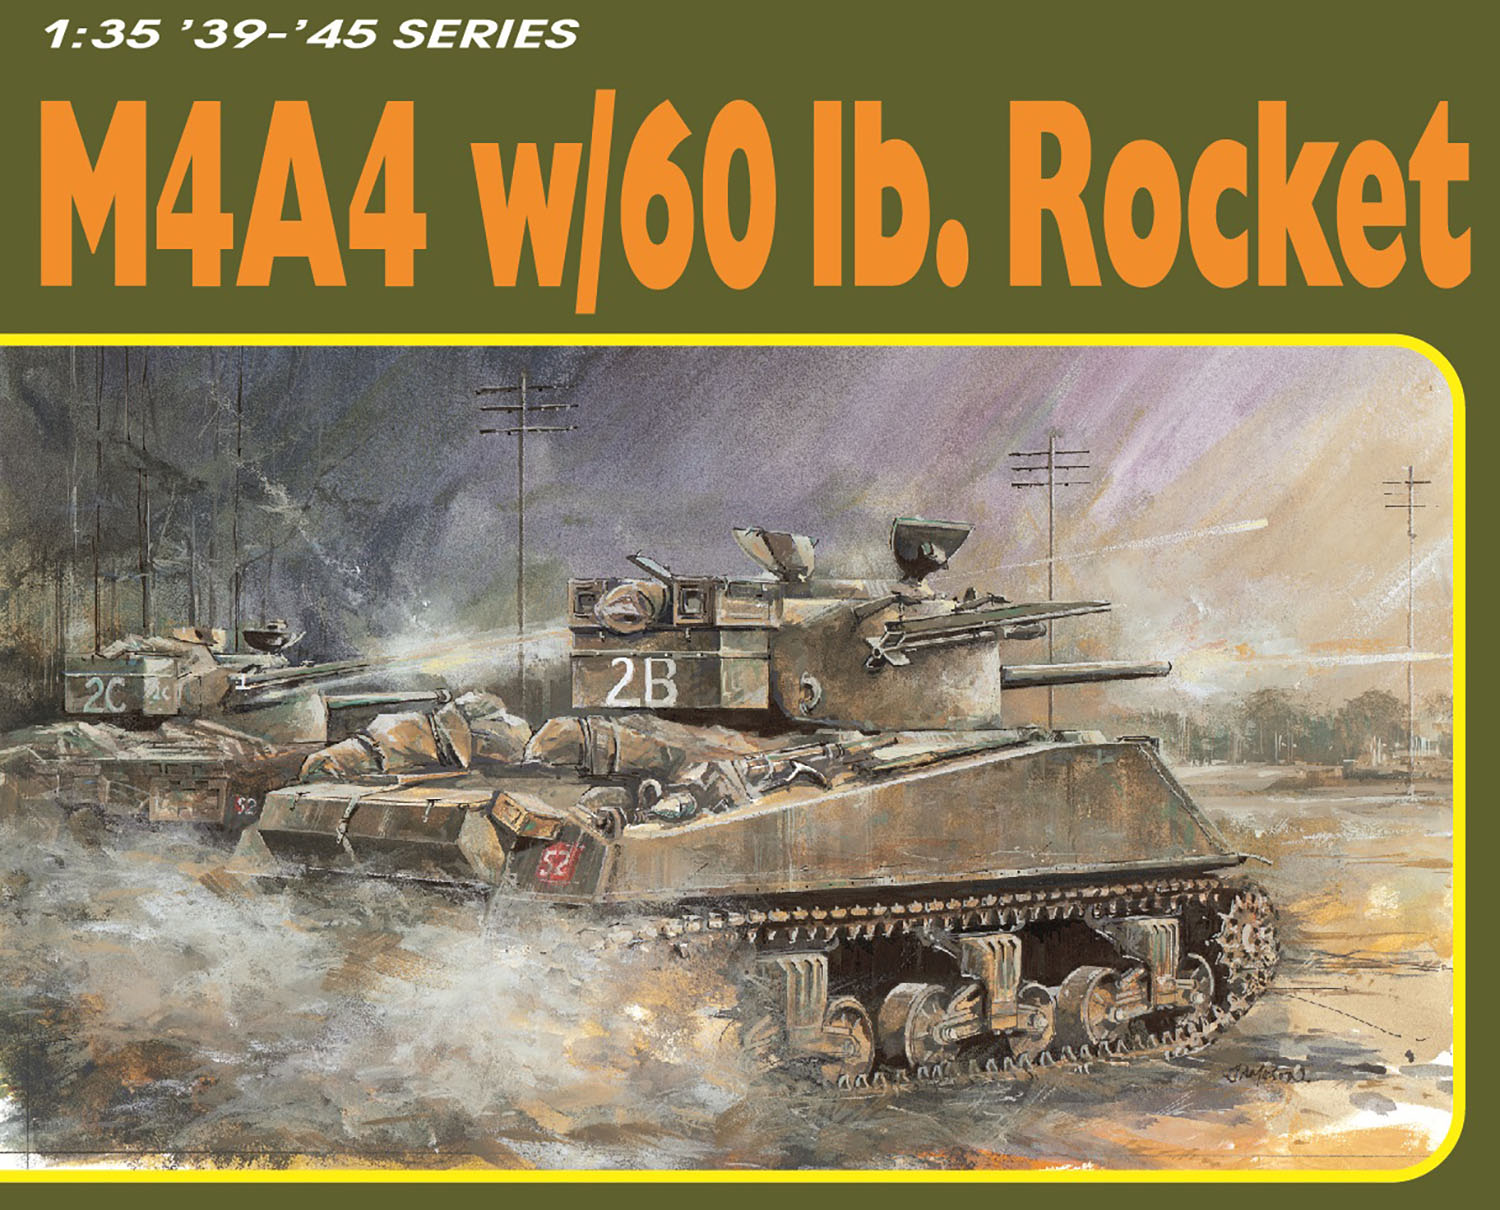 1/35 WW.II イギリス軍 M4A4 シャーマン 60ポンドロケット弾搭載型 アルミ砲身/フィギュア/3Dプリント付属 豪 - ウインドウを閉じる